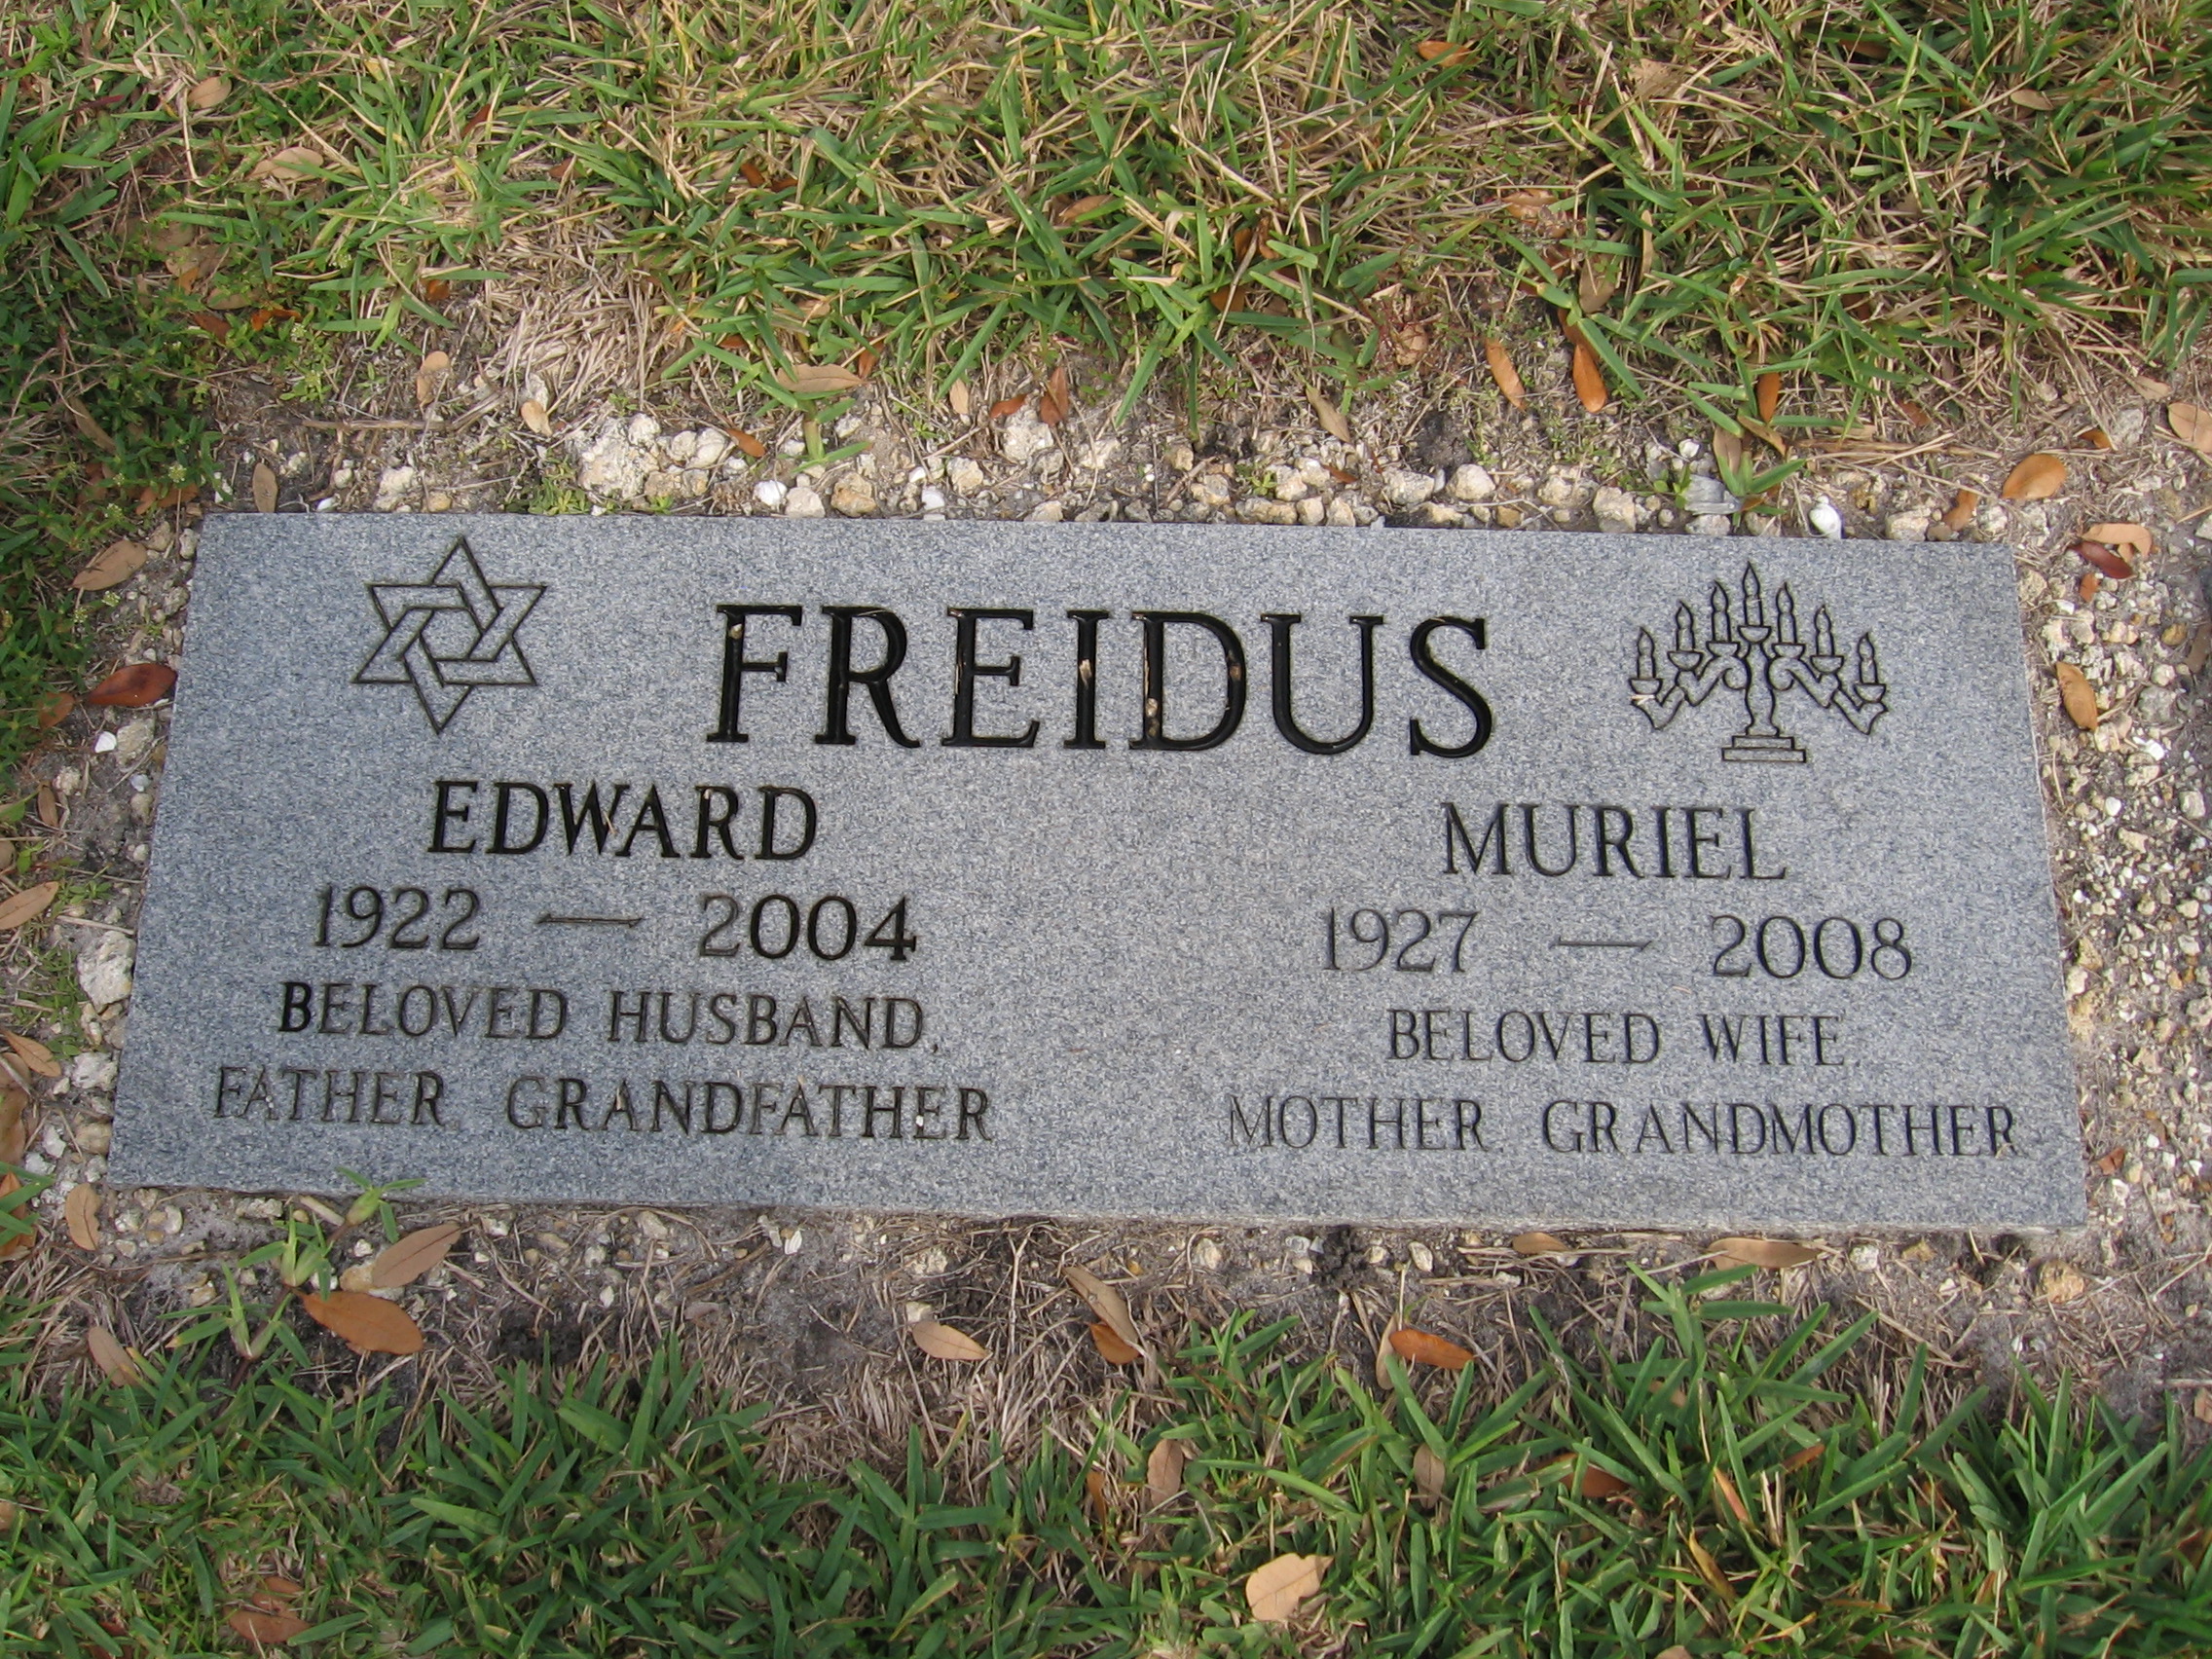 Edward Freidus